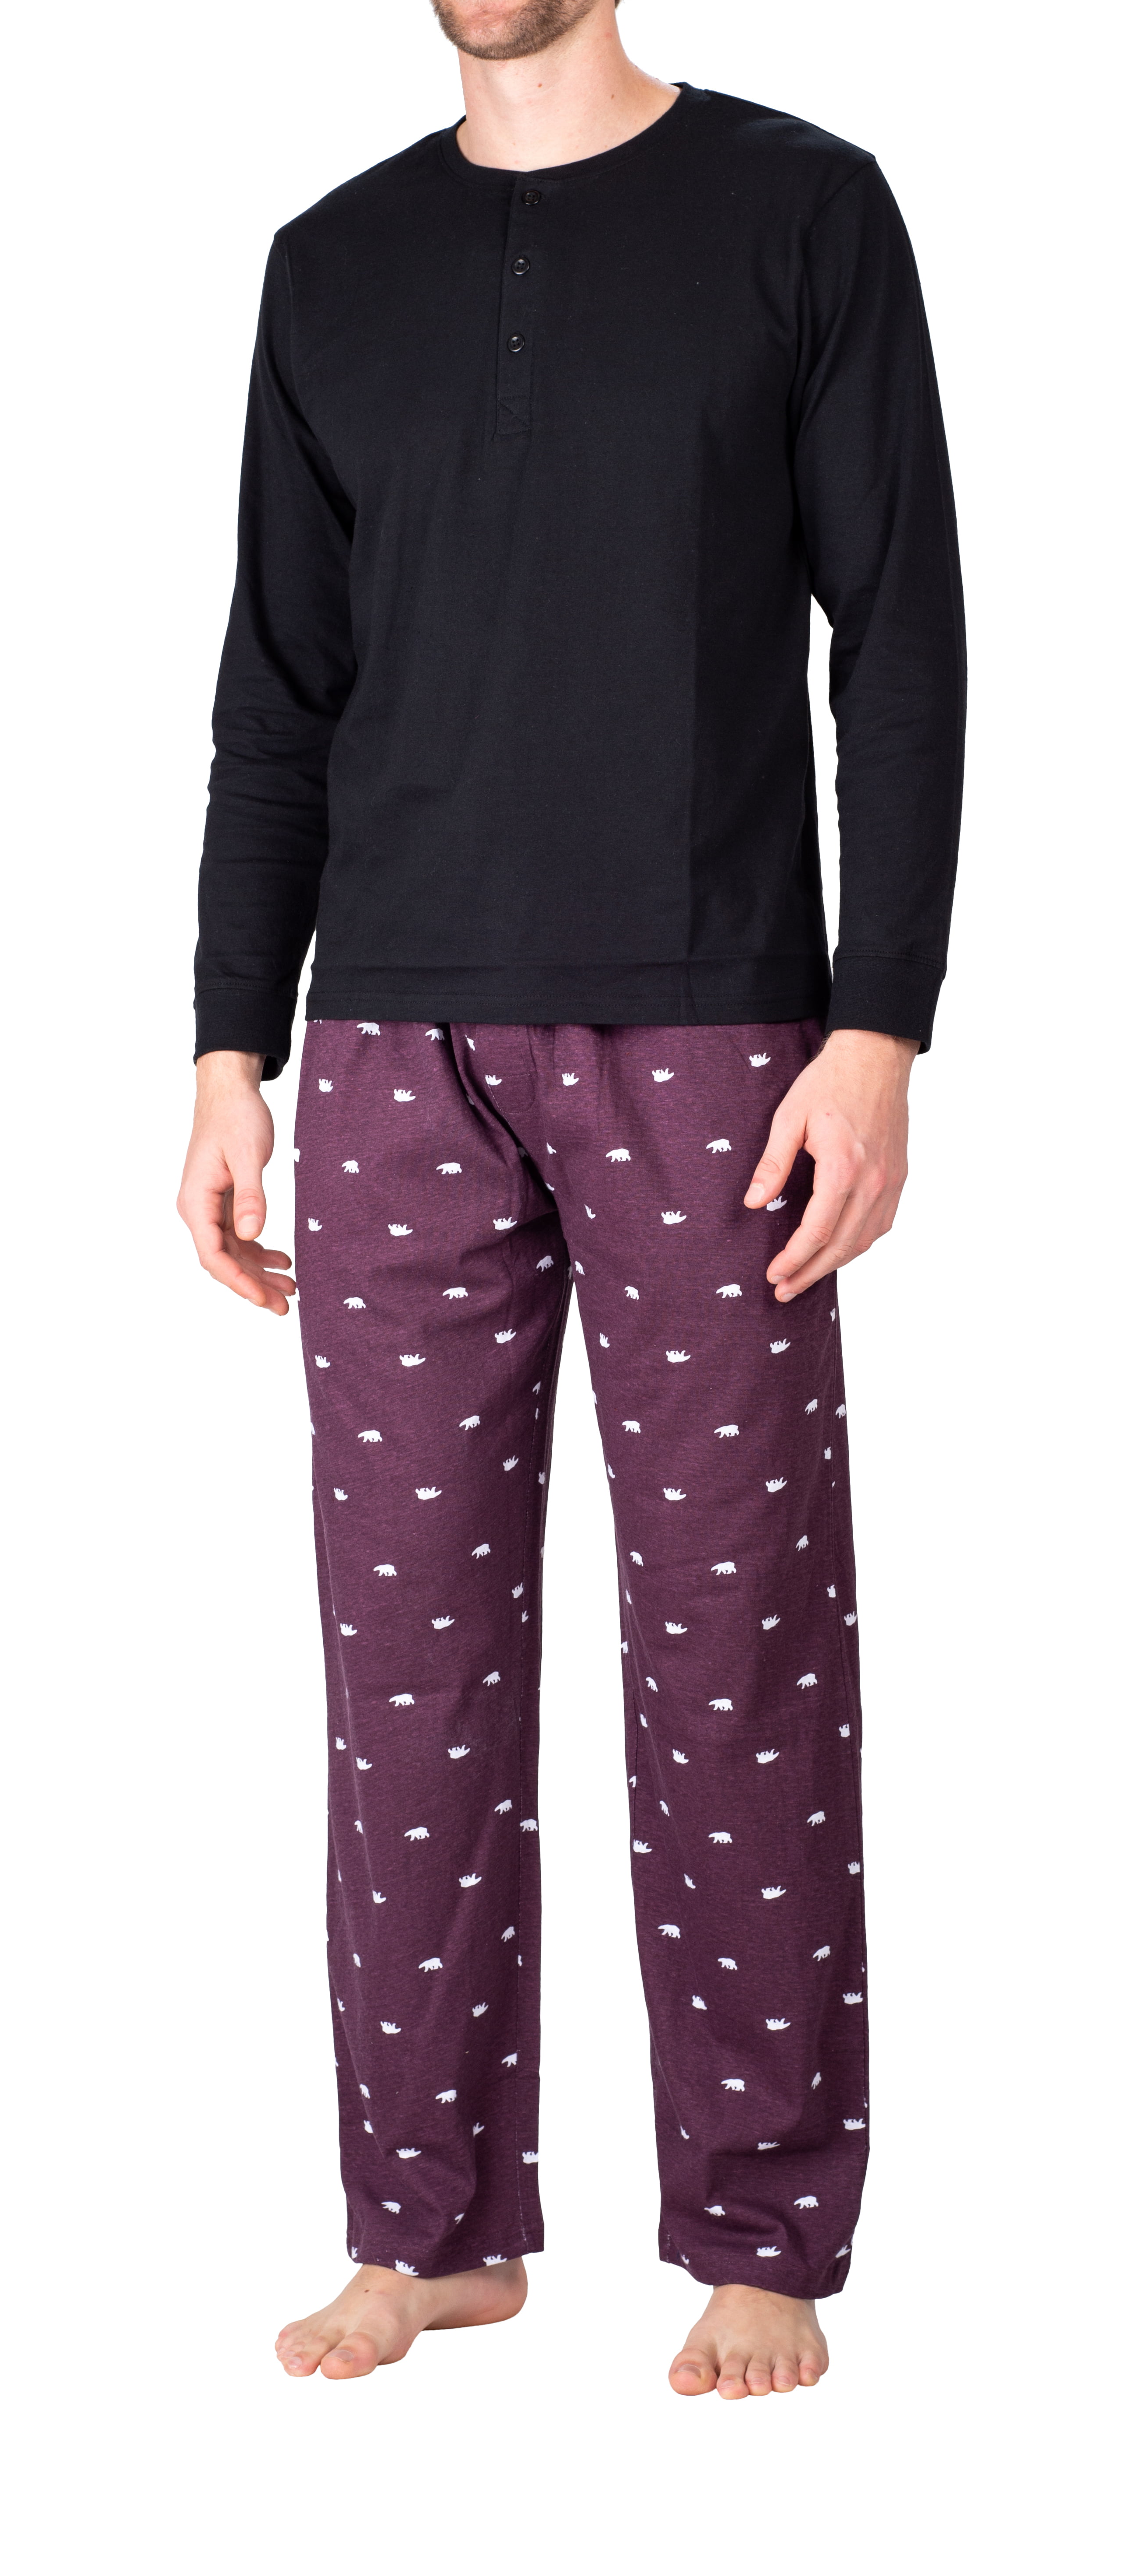 SLEEPHERO Men’s Pyjama Set Pyjamas For Men 2 Piece PJ Set with Cotton Knit Men Pyjama Pants and Long Sleeve Henley T-Shirt 